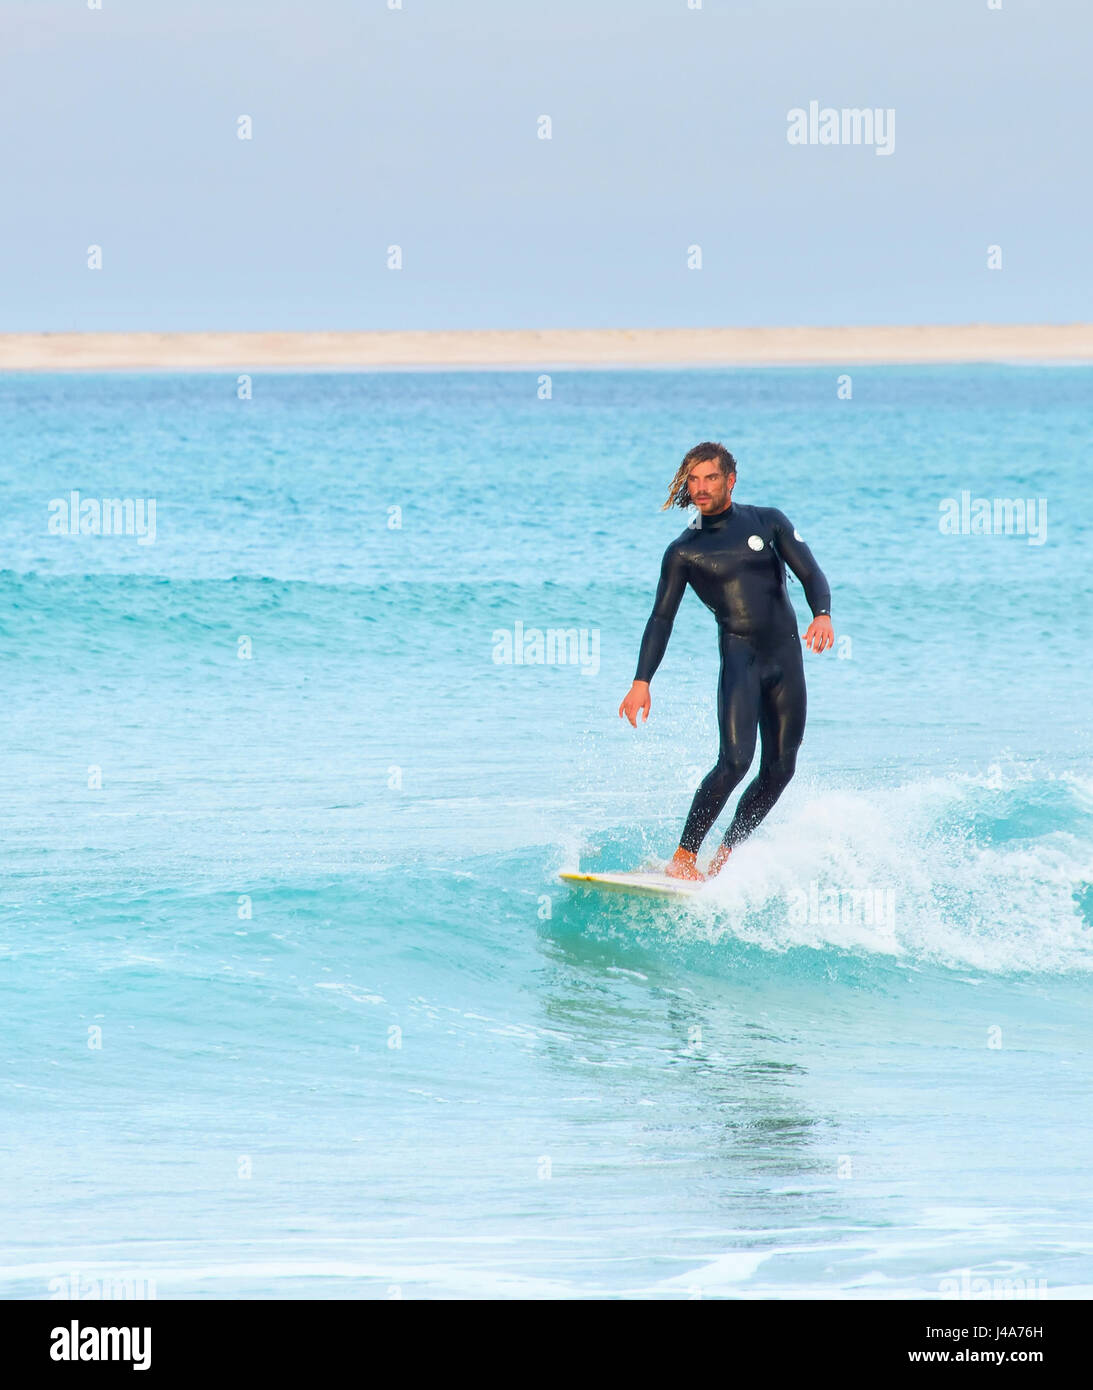 Peniche, Portugal - 2. Dezember 2016: Surfer auf einer Welle im Ozean in Peniche. Portugal ist eines der besten Surf-Szenen in Europa Stockfoto